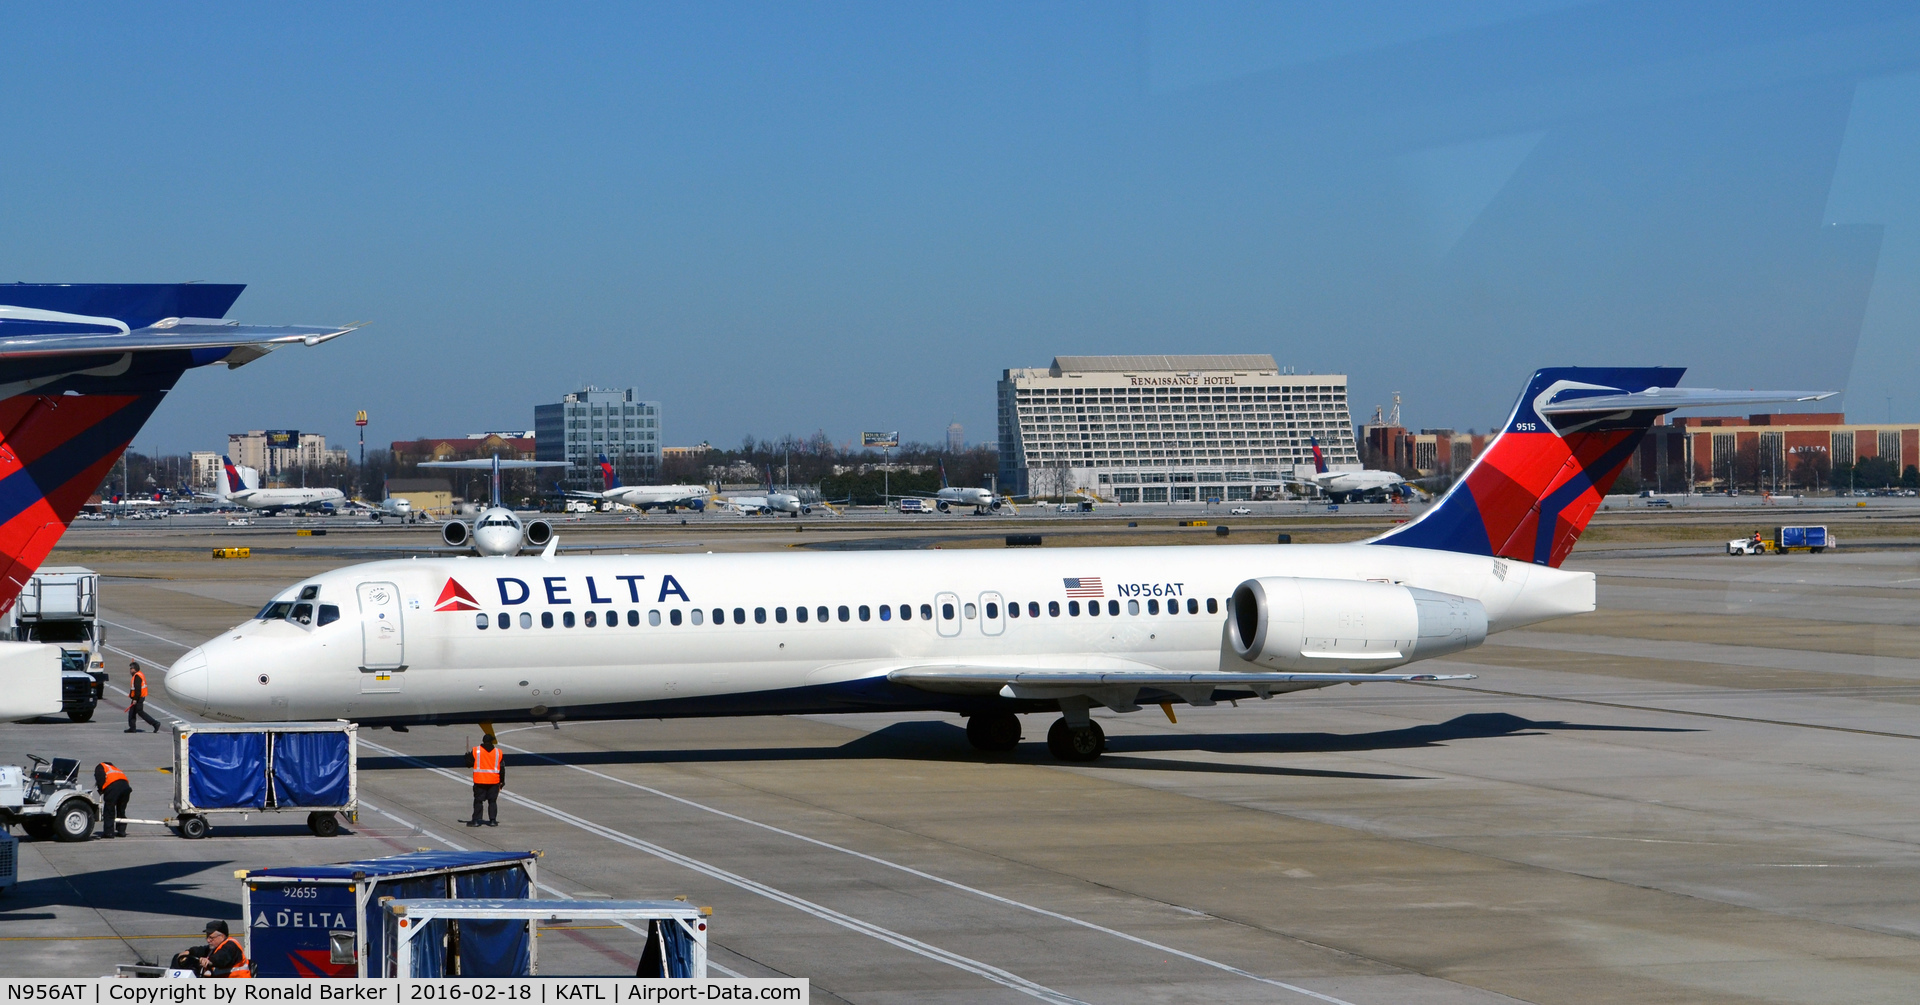 N956AT, 2000 Boeing 717-200 C/N 55018, Arrival at gate Atlanta